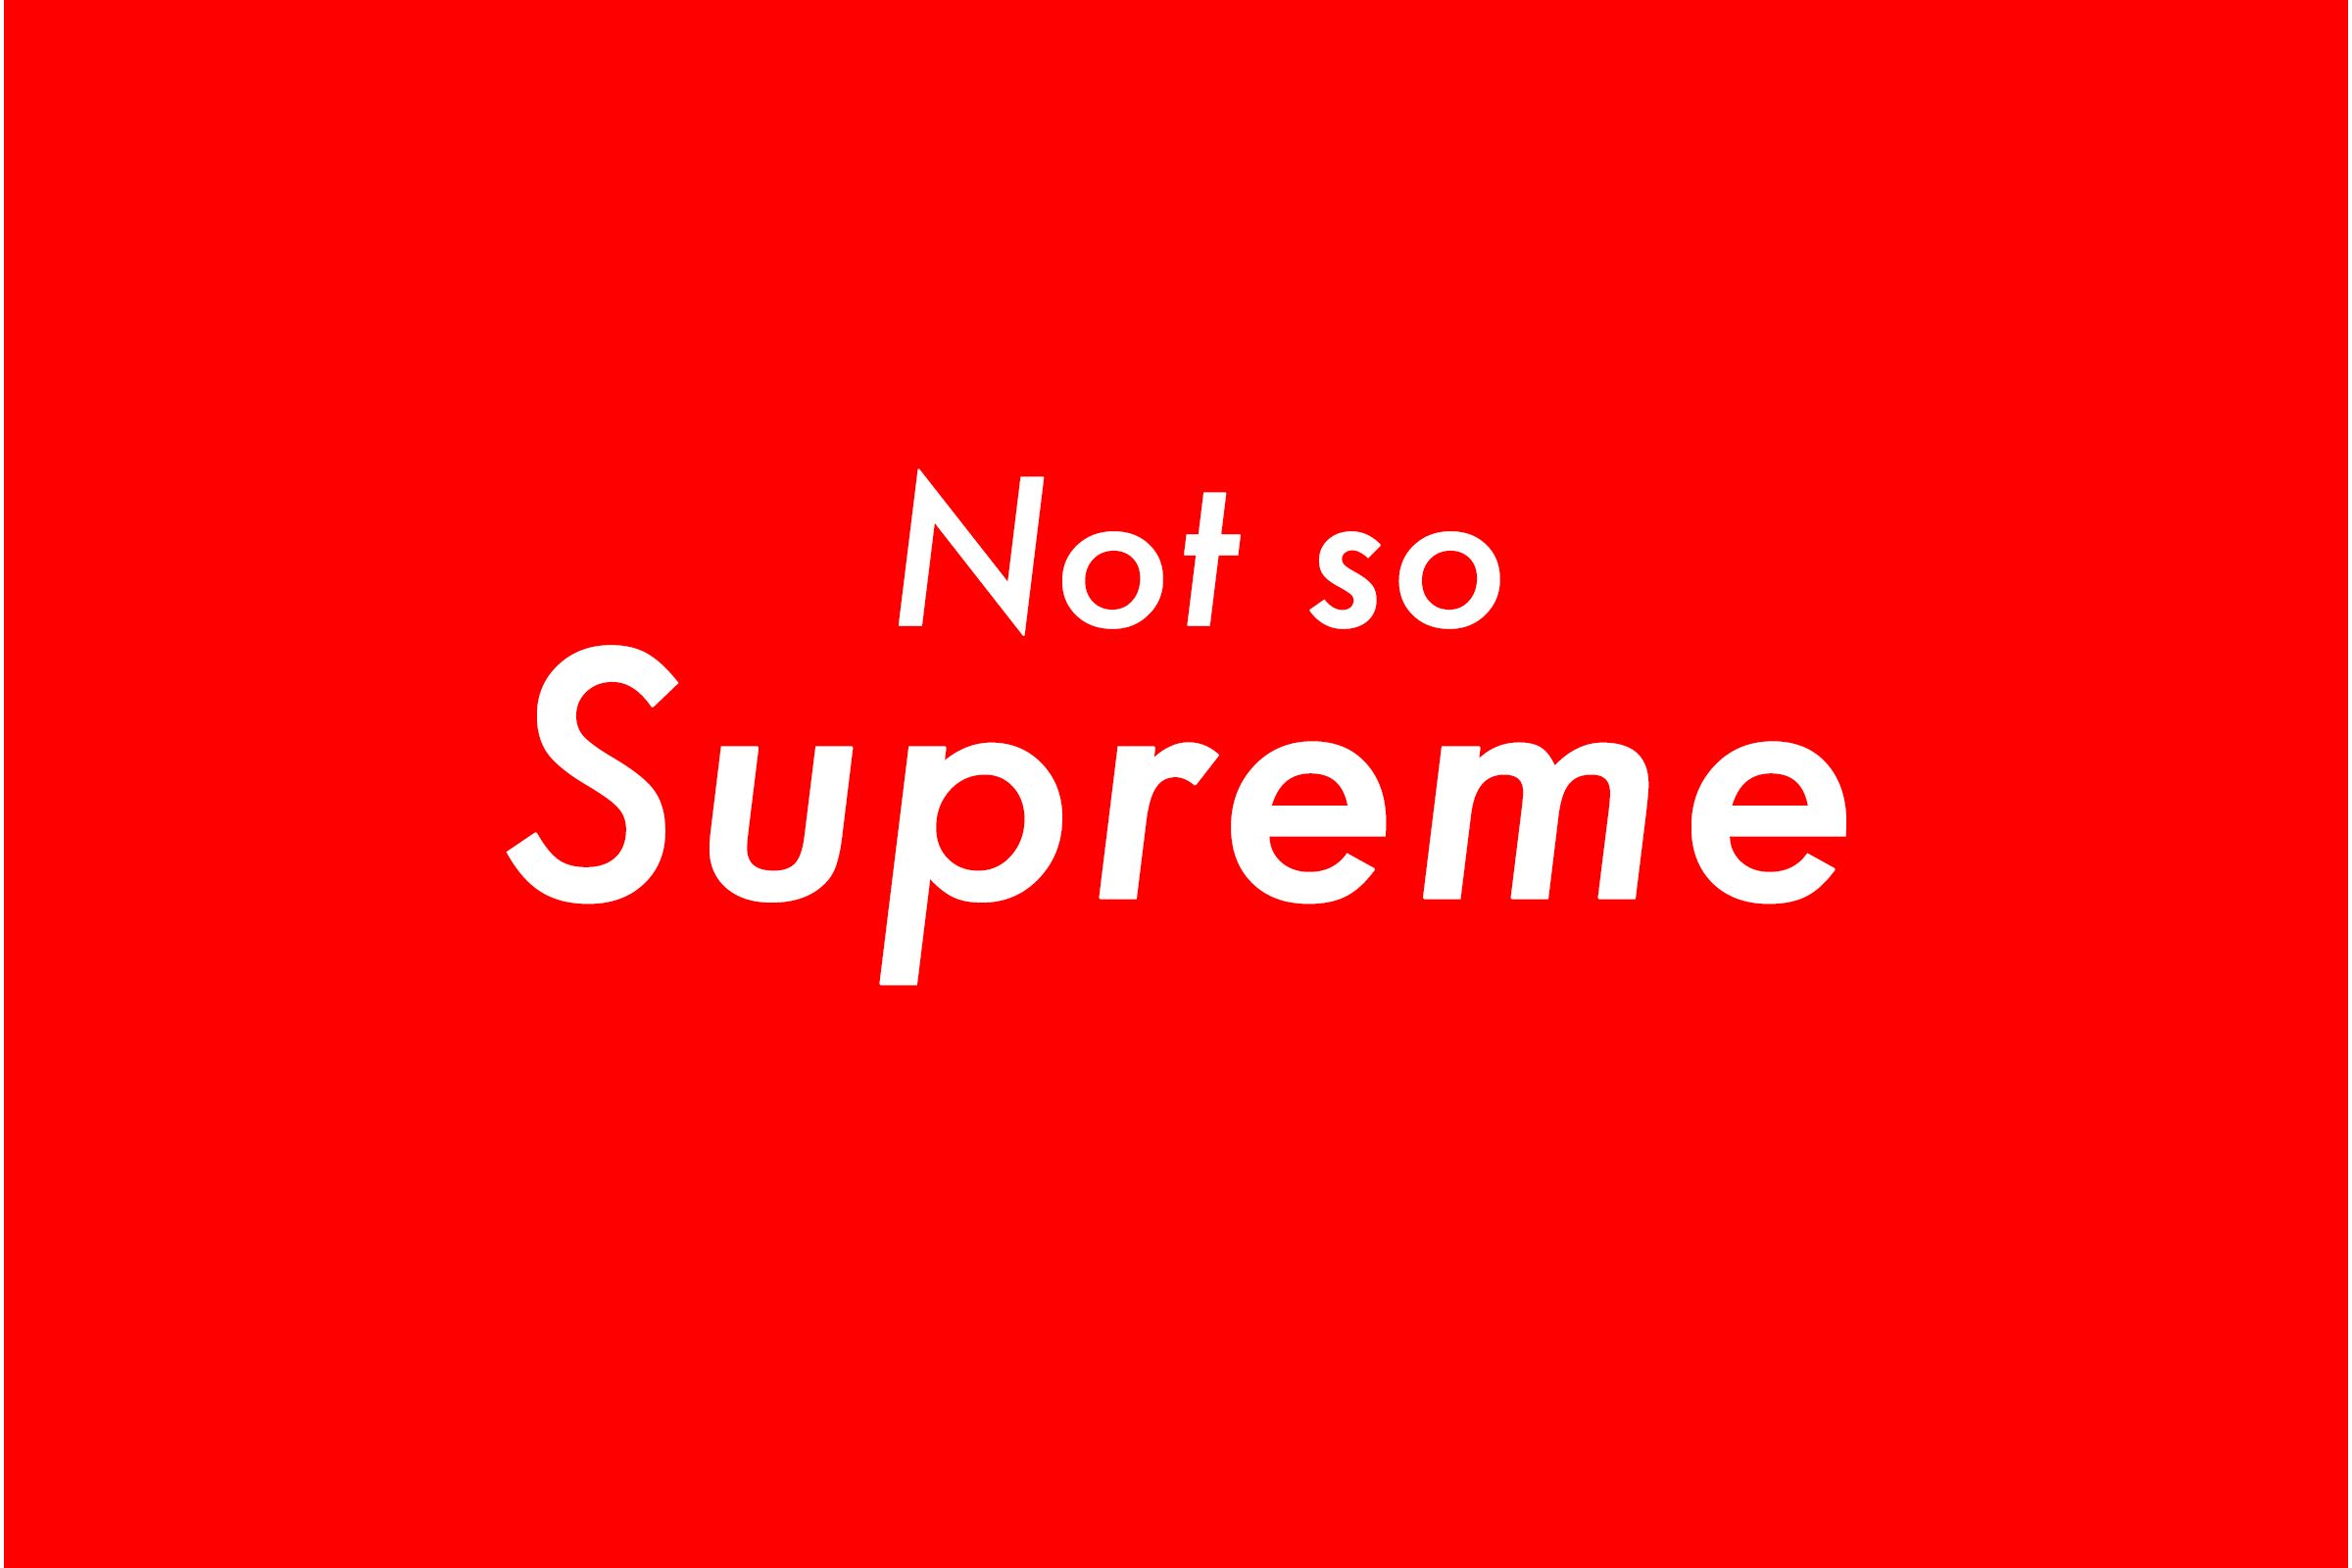 What's so supreme about Supreme?